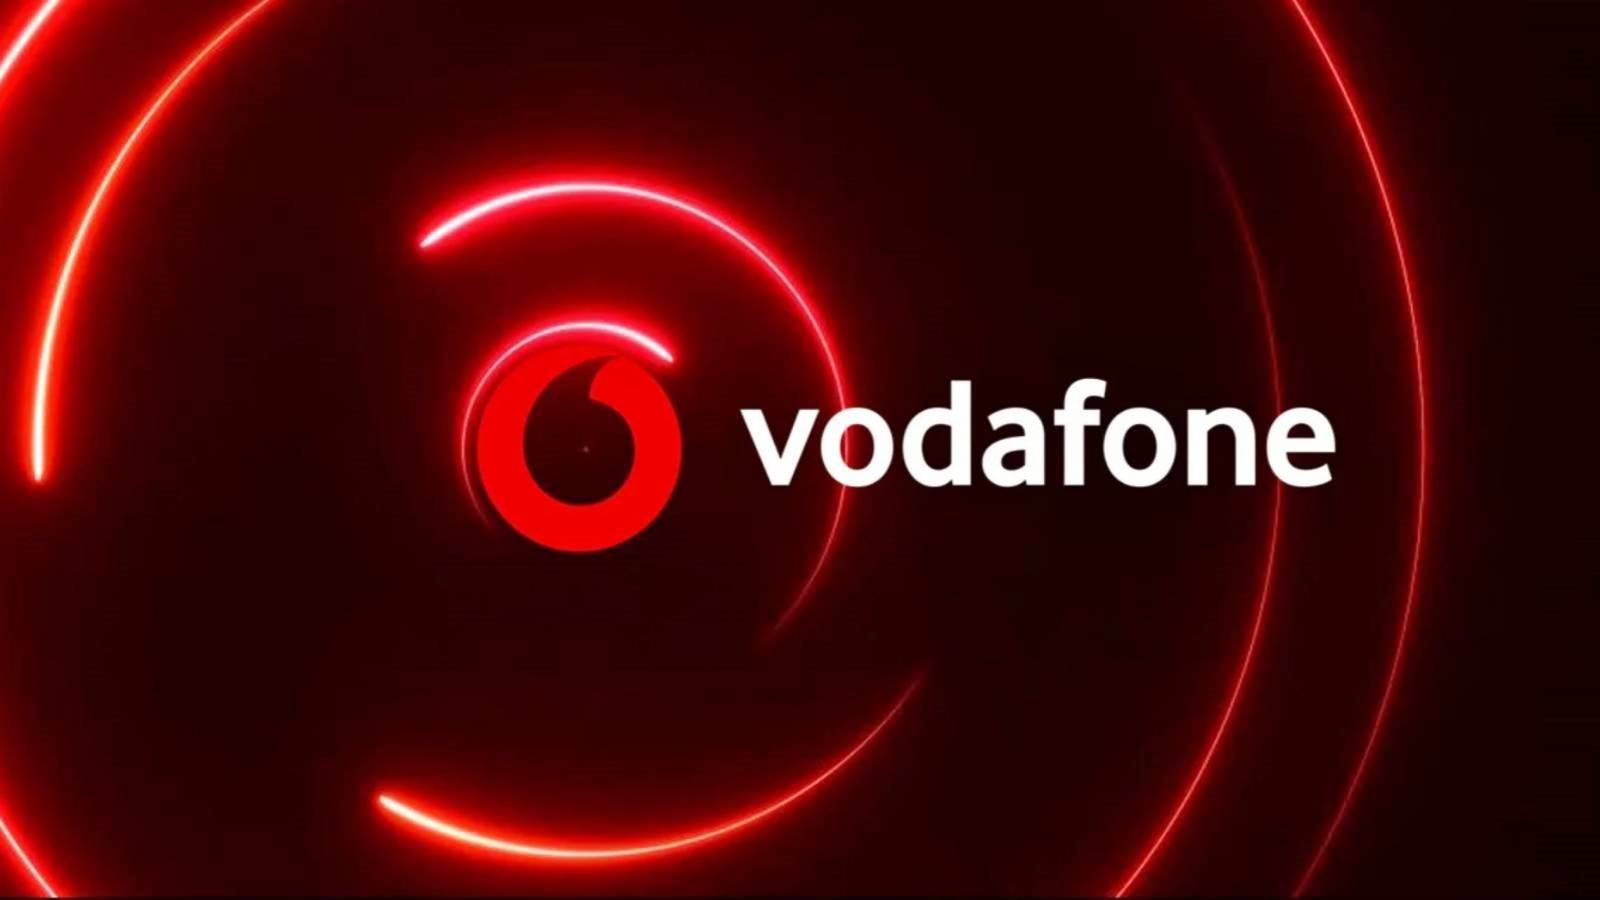 Vodafone informierte Kunden, dass sie jetzt kostenlose Rumänen anbieten